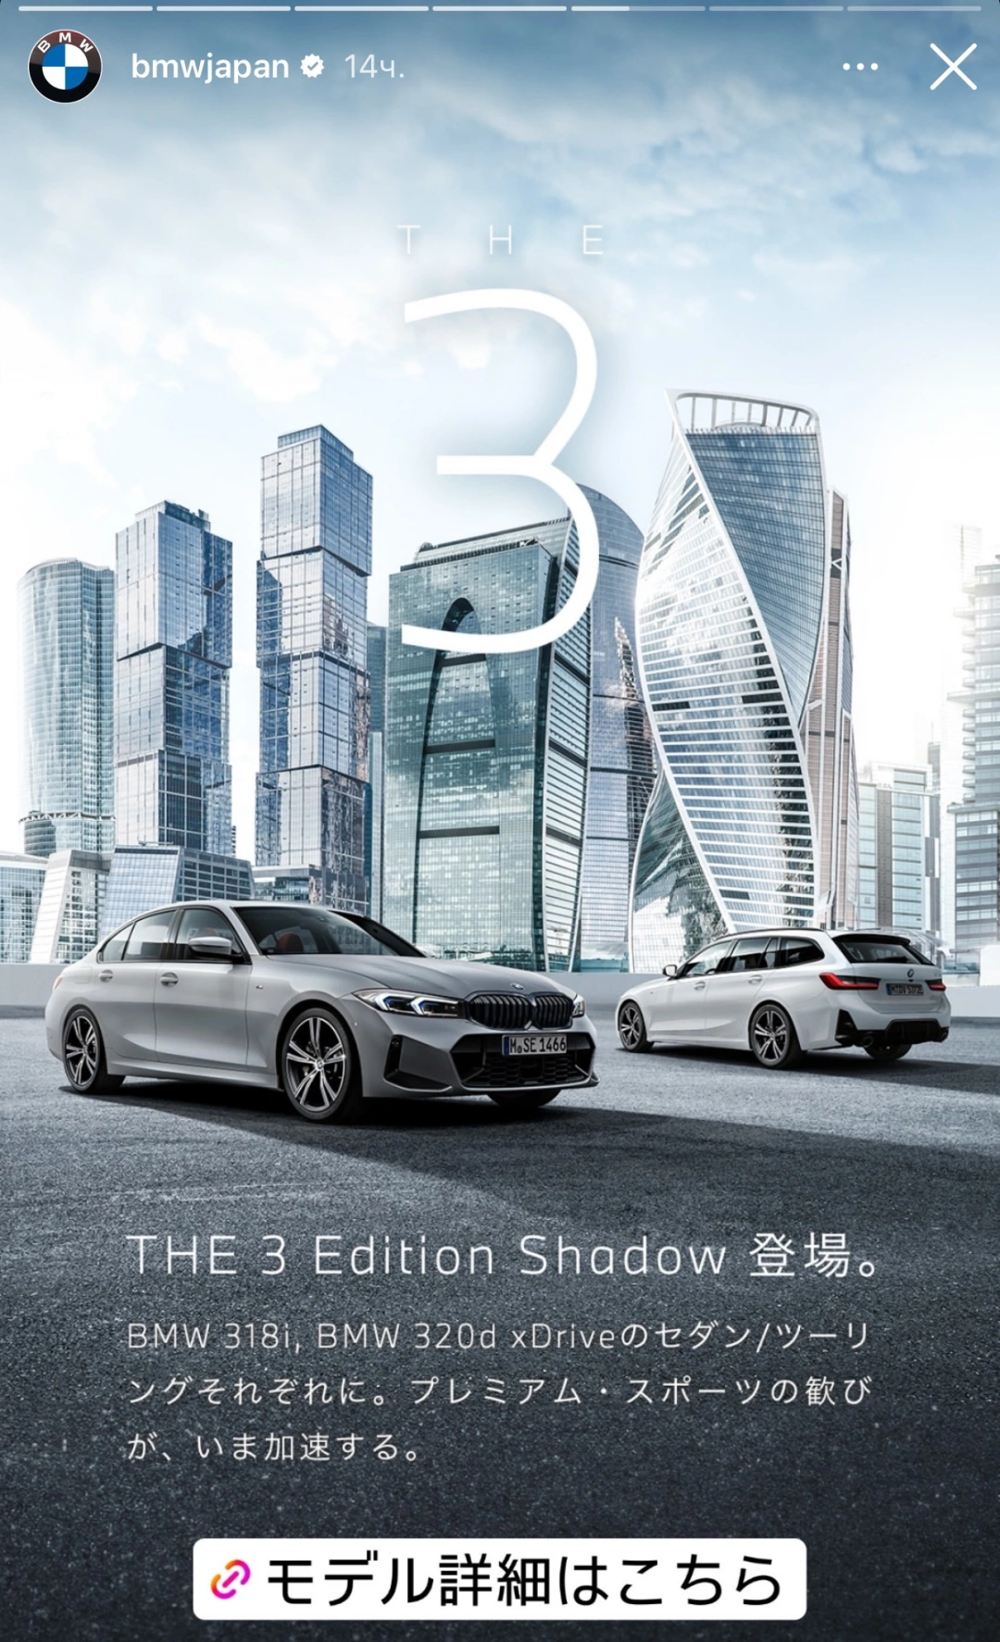 Компания BMW выпустила рекламу новой модели авто на фоне "Москвы-сити"